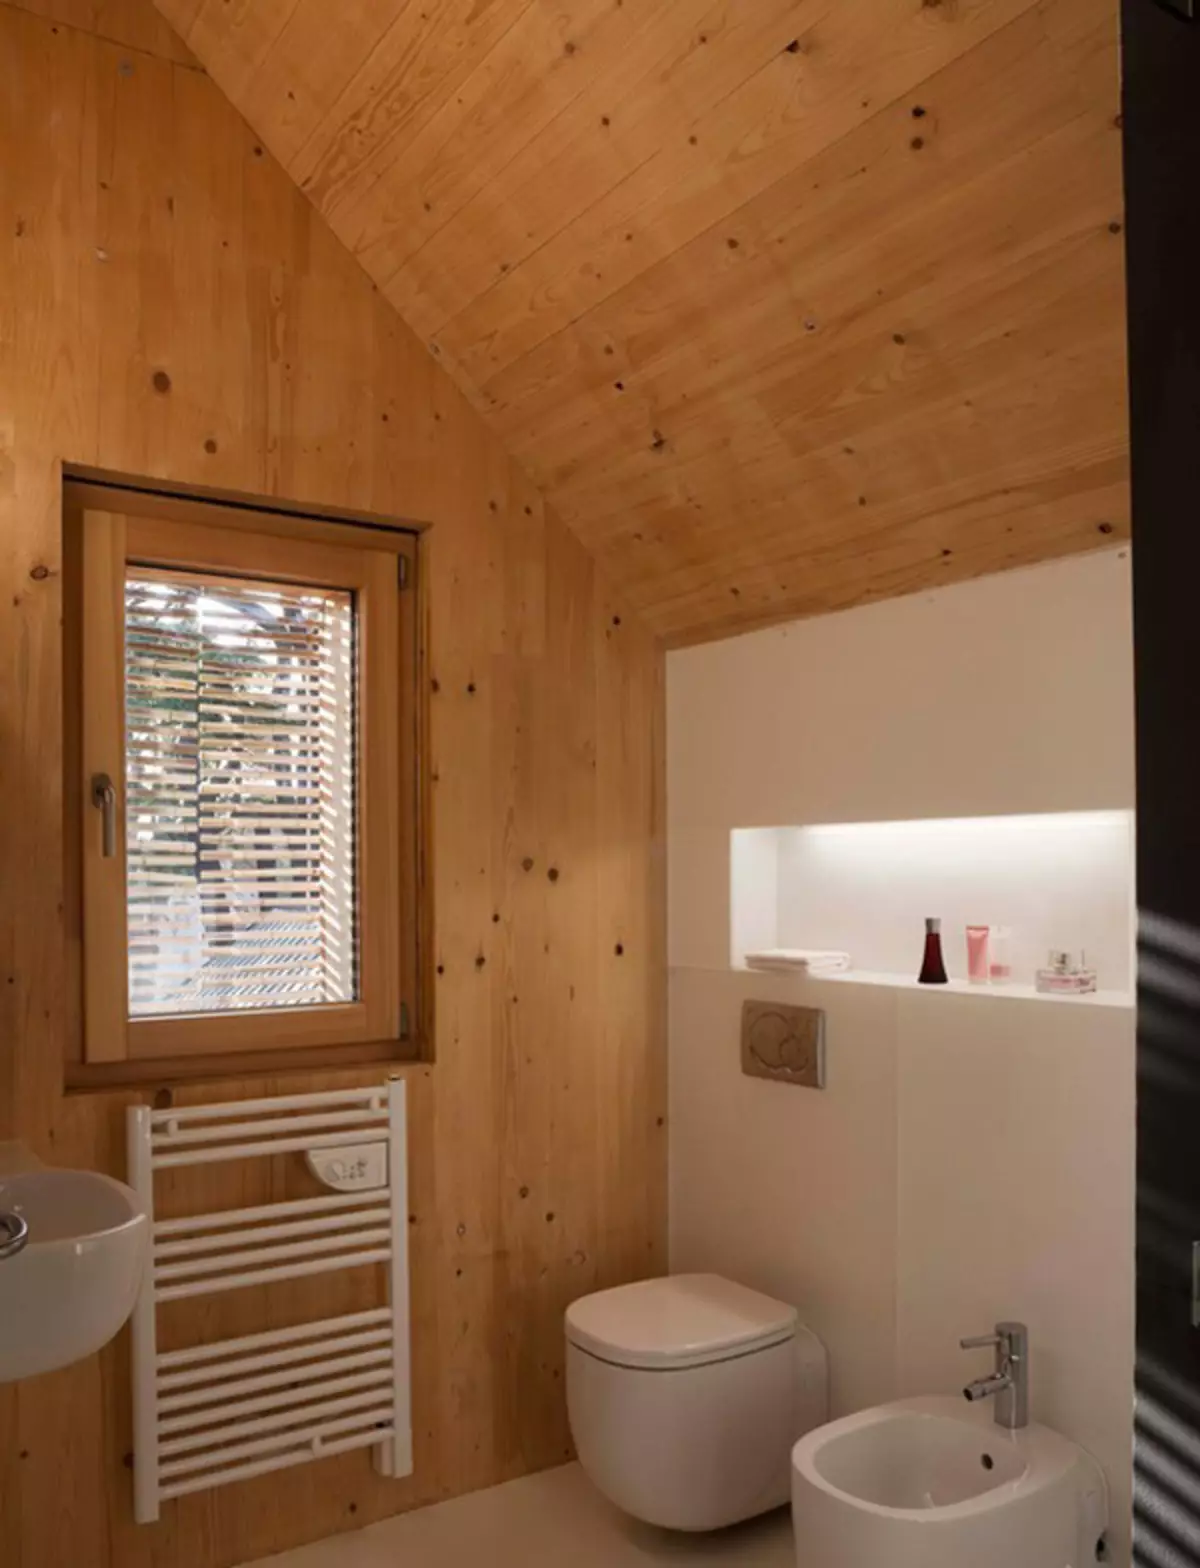 Badezimmer in einem Holzhaus (76 Fotos): Zimmerauslegung in einem Haus einer Bar im Land, Beispiele für Bodenabfertigung, Lüftungsschemata 10475_69